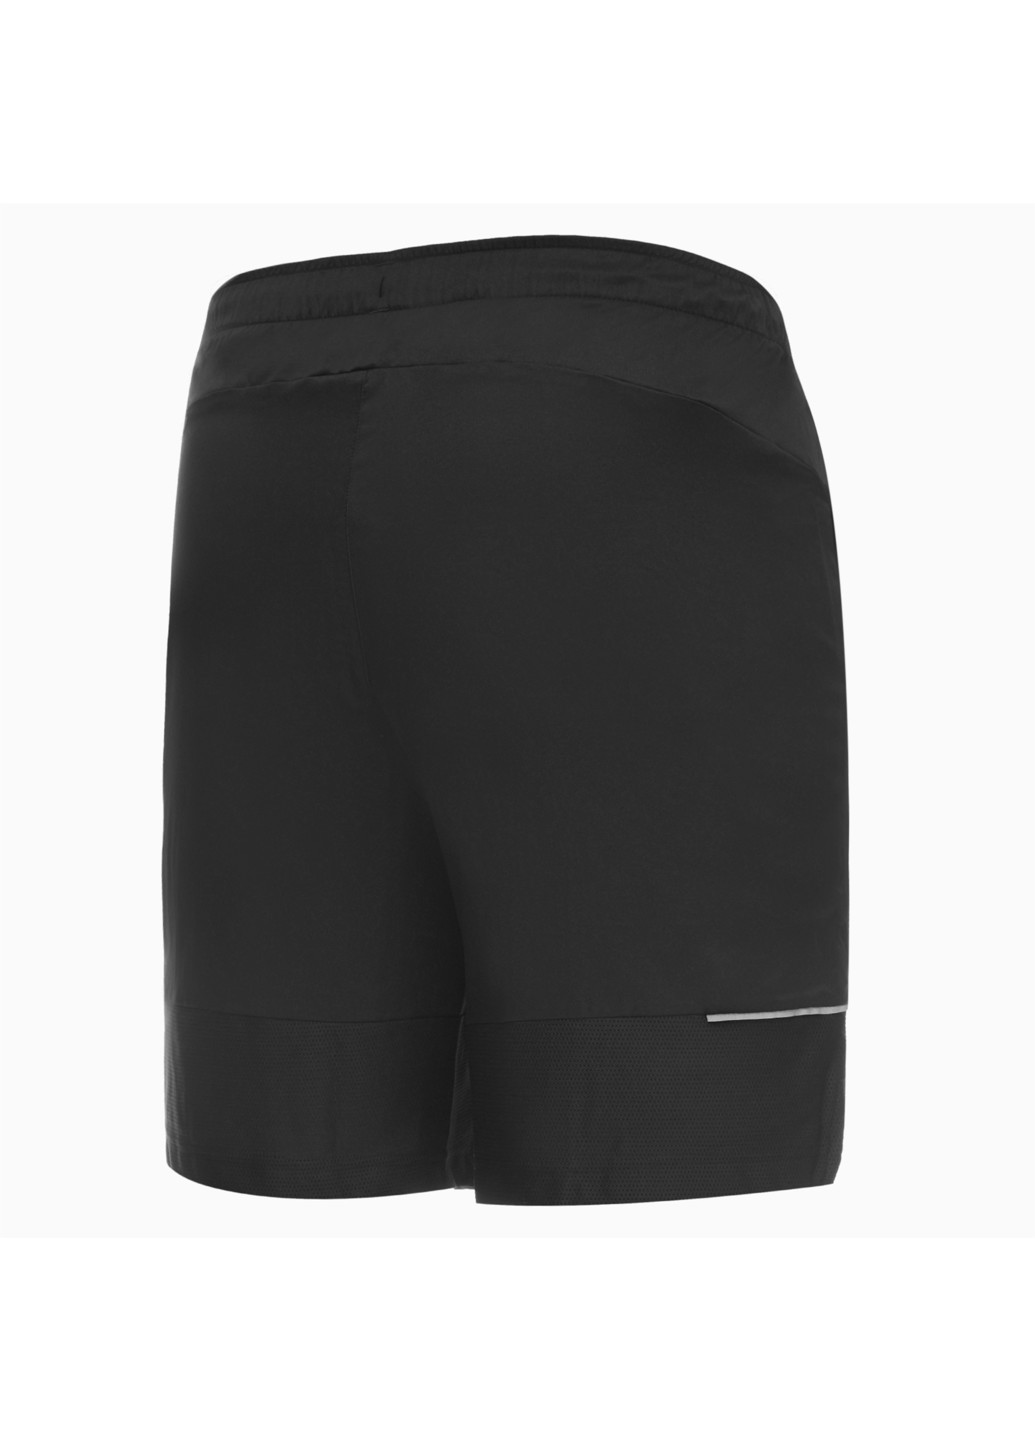 Шорты Active 8 inch Shorts Poly M Puma однотонные чёрные спортивные полиэстер, эластан